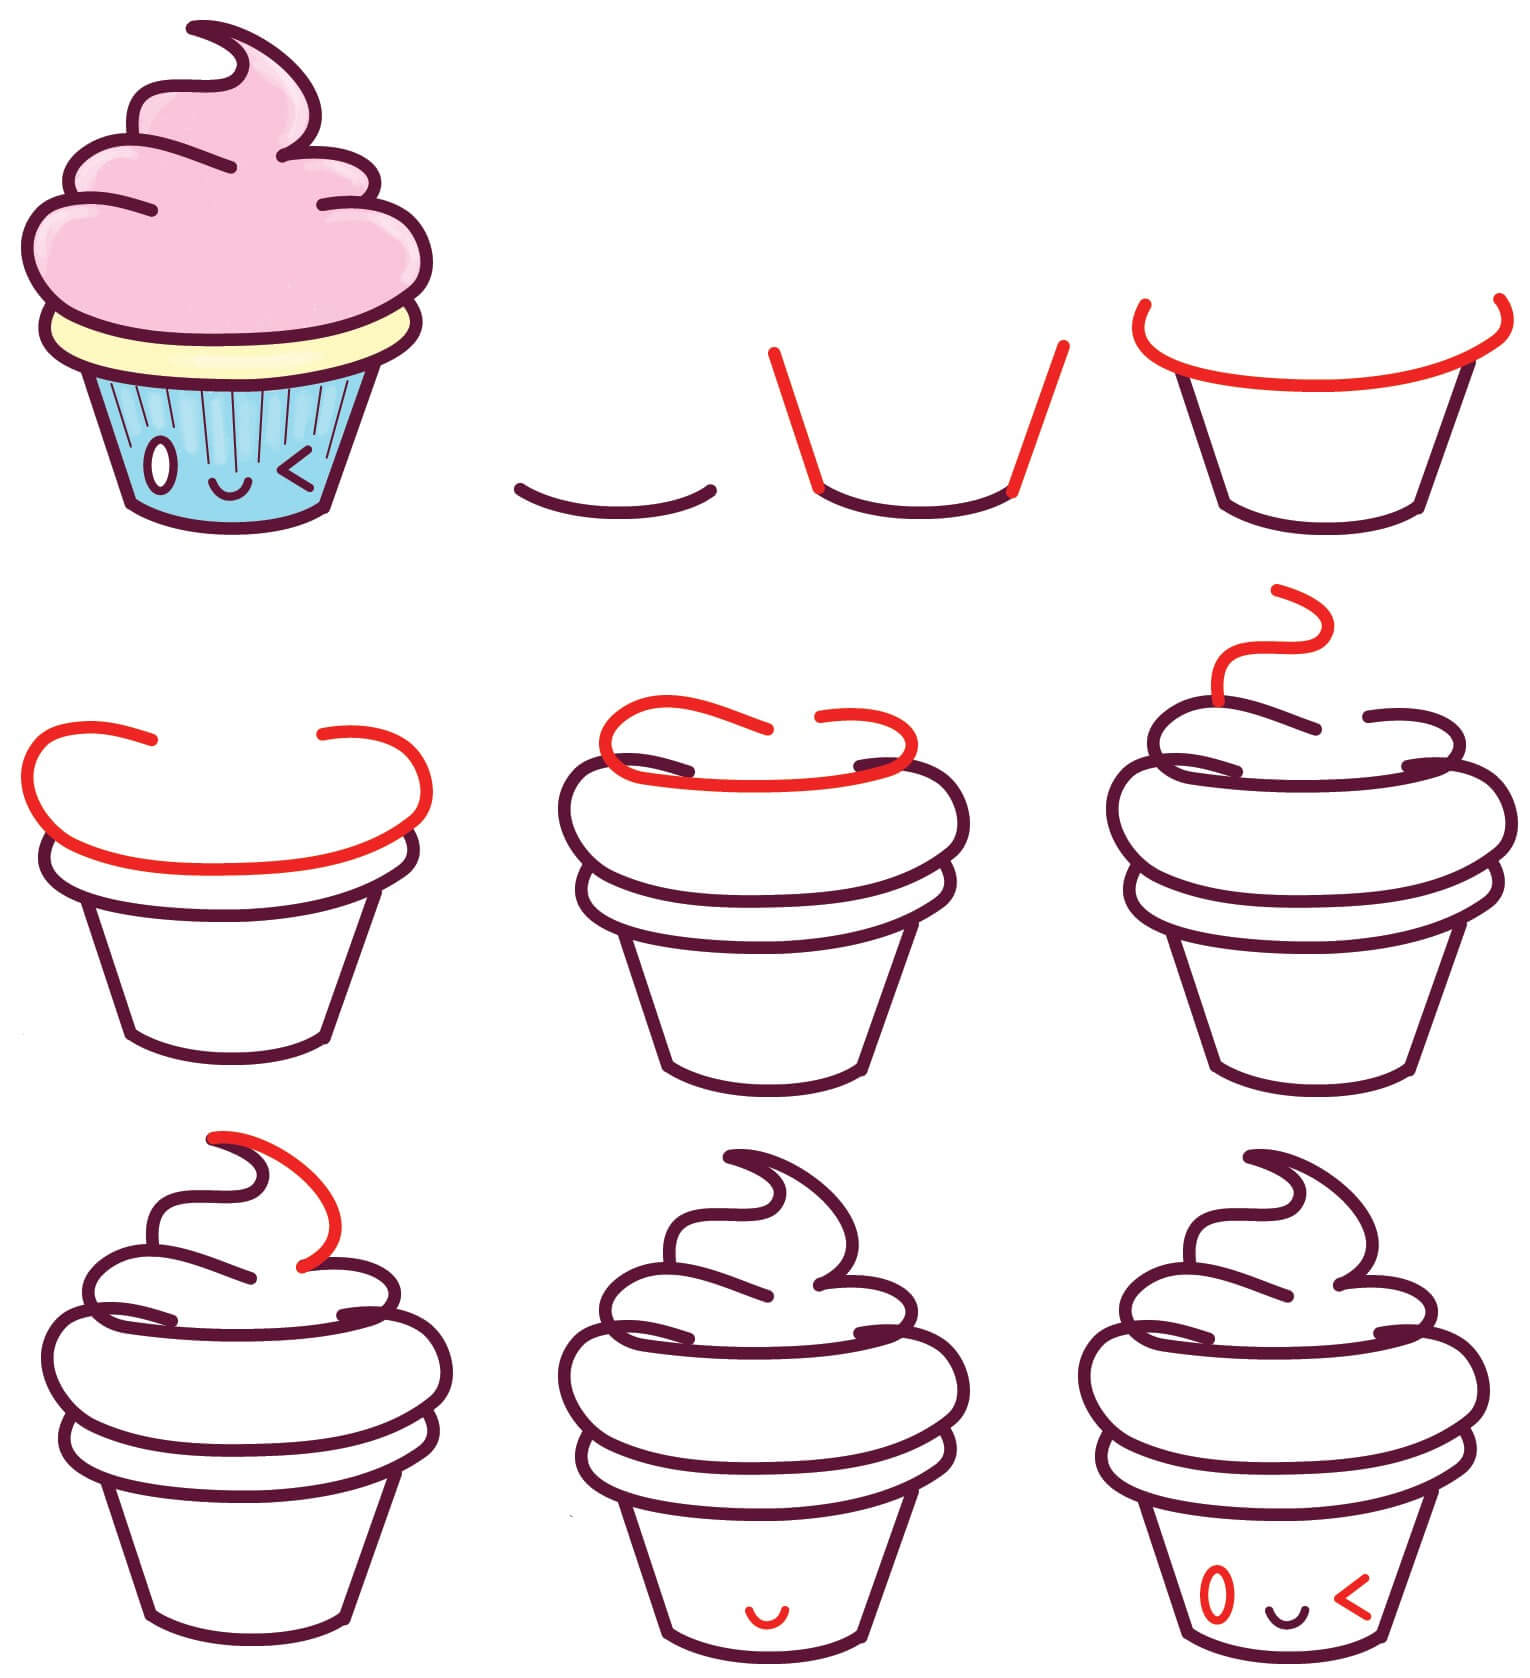 Cupcake-Idee (4) zeichnen ideen